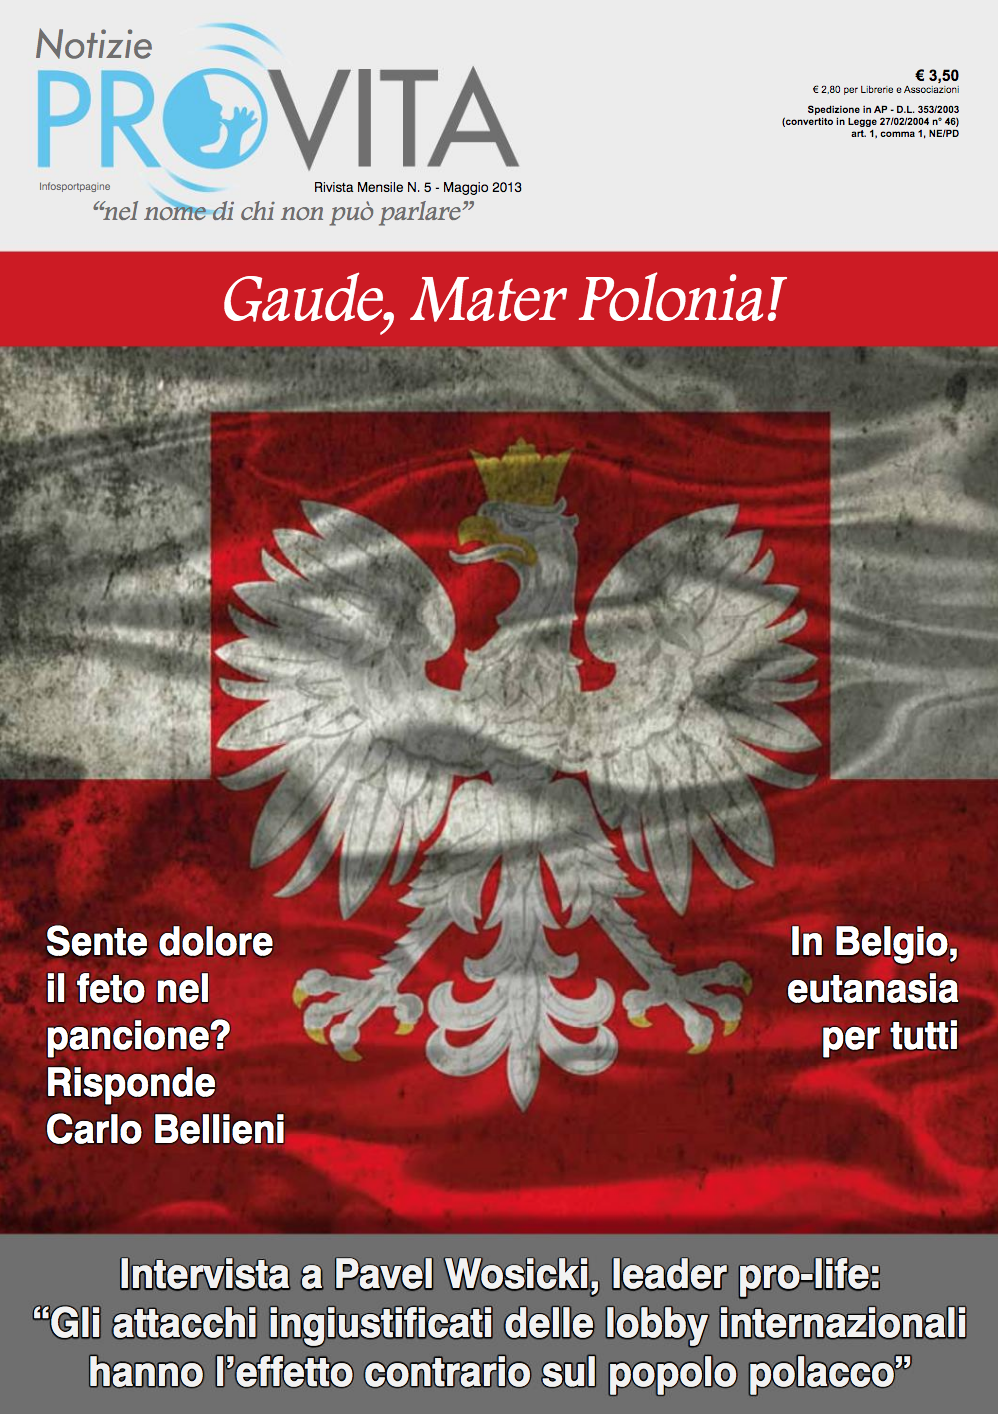 Copertina e numero dedicato alla Polonia, da sempre e soprattutto in questi anni in prima linea nella difesa della Vita